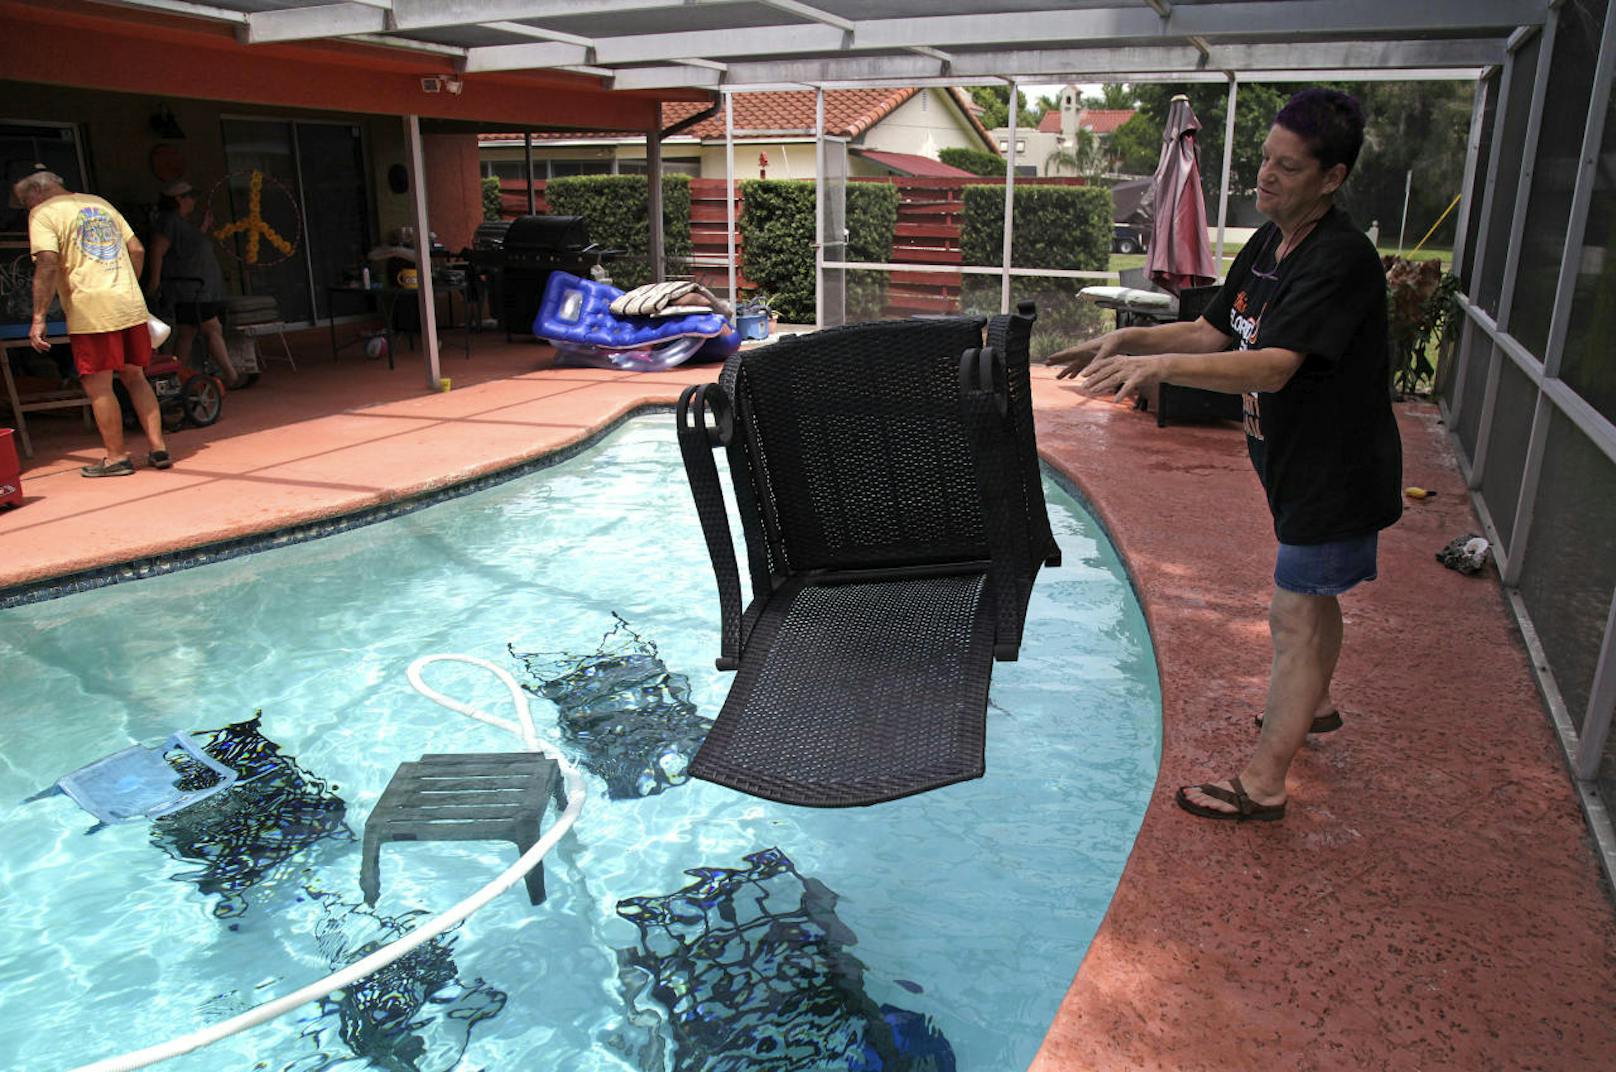 In Hotelanlagen werden die Möbel in Pools geworfen, damit sie nicht in der Gegend herumfliegen.